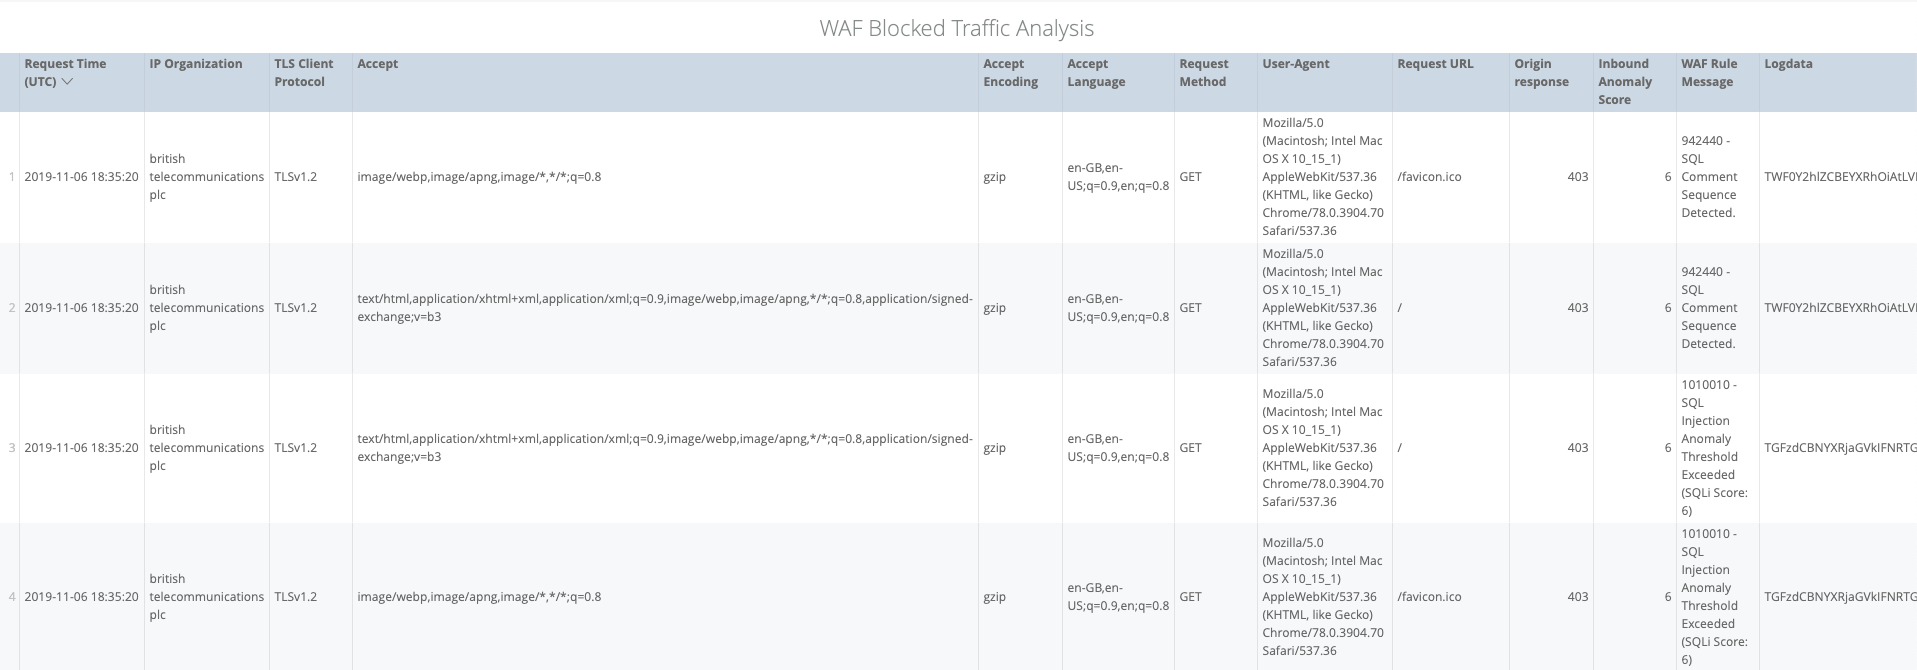 WAF Blocked Traffic Analysis